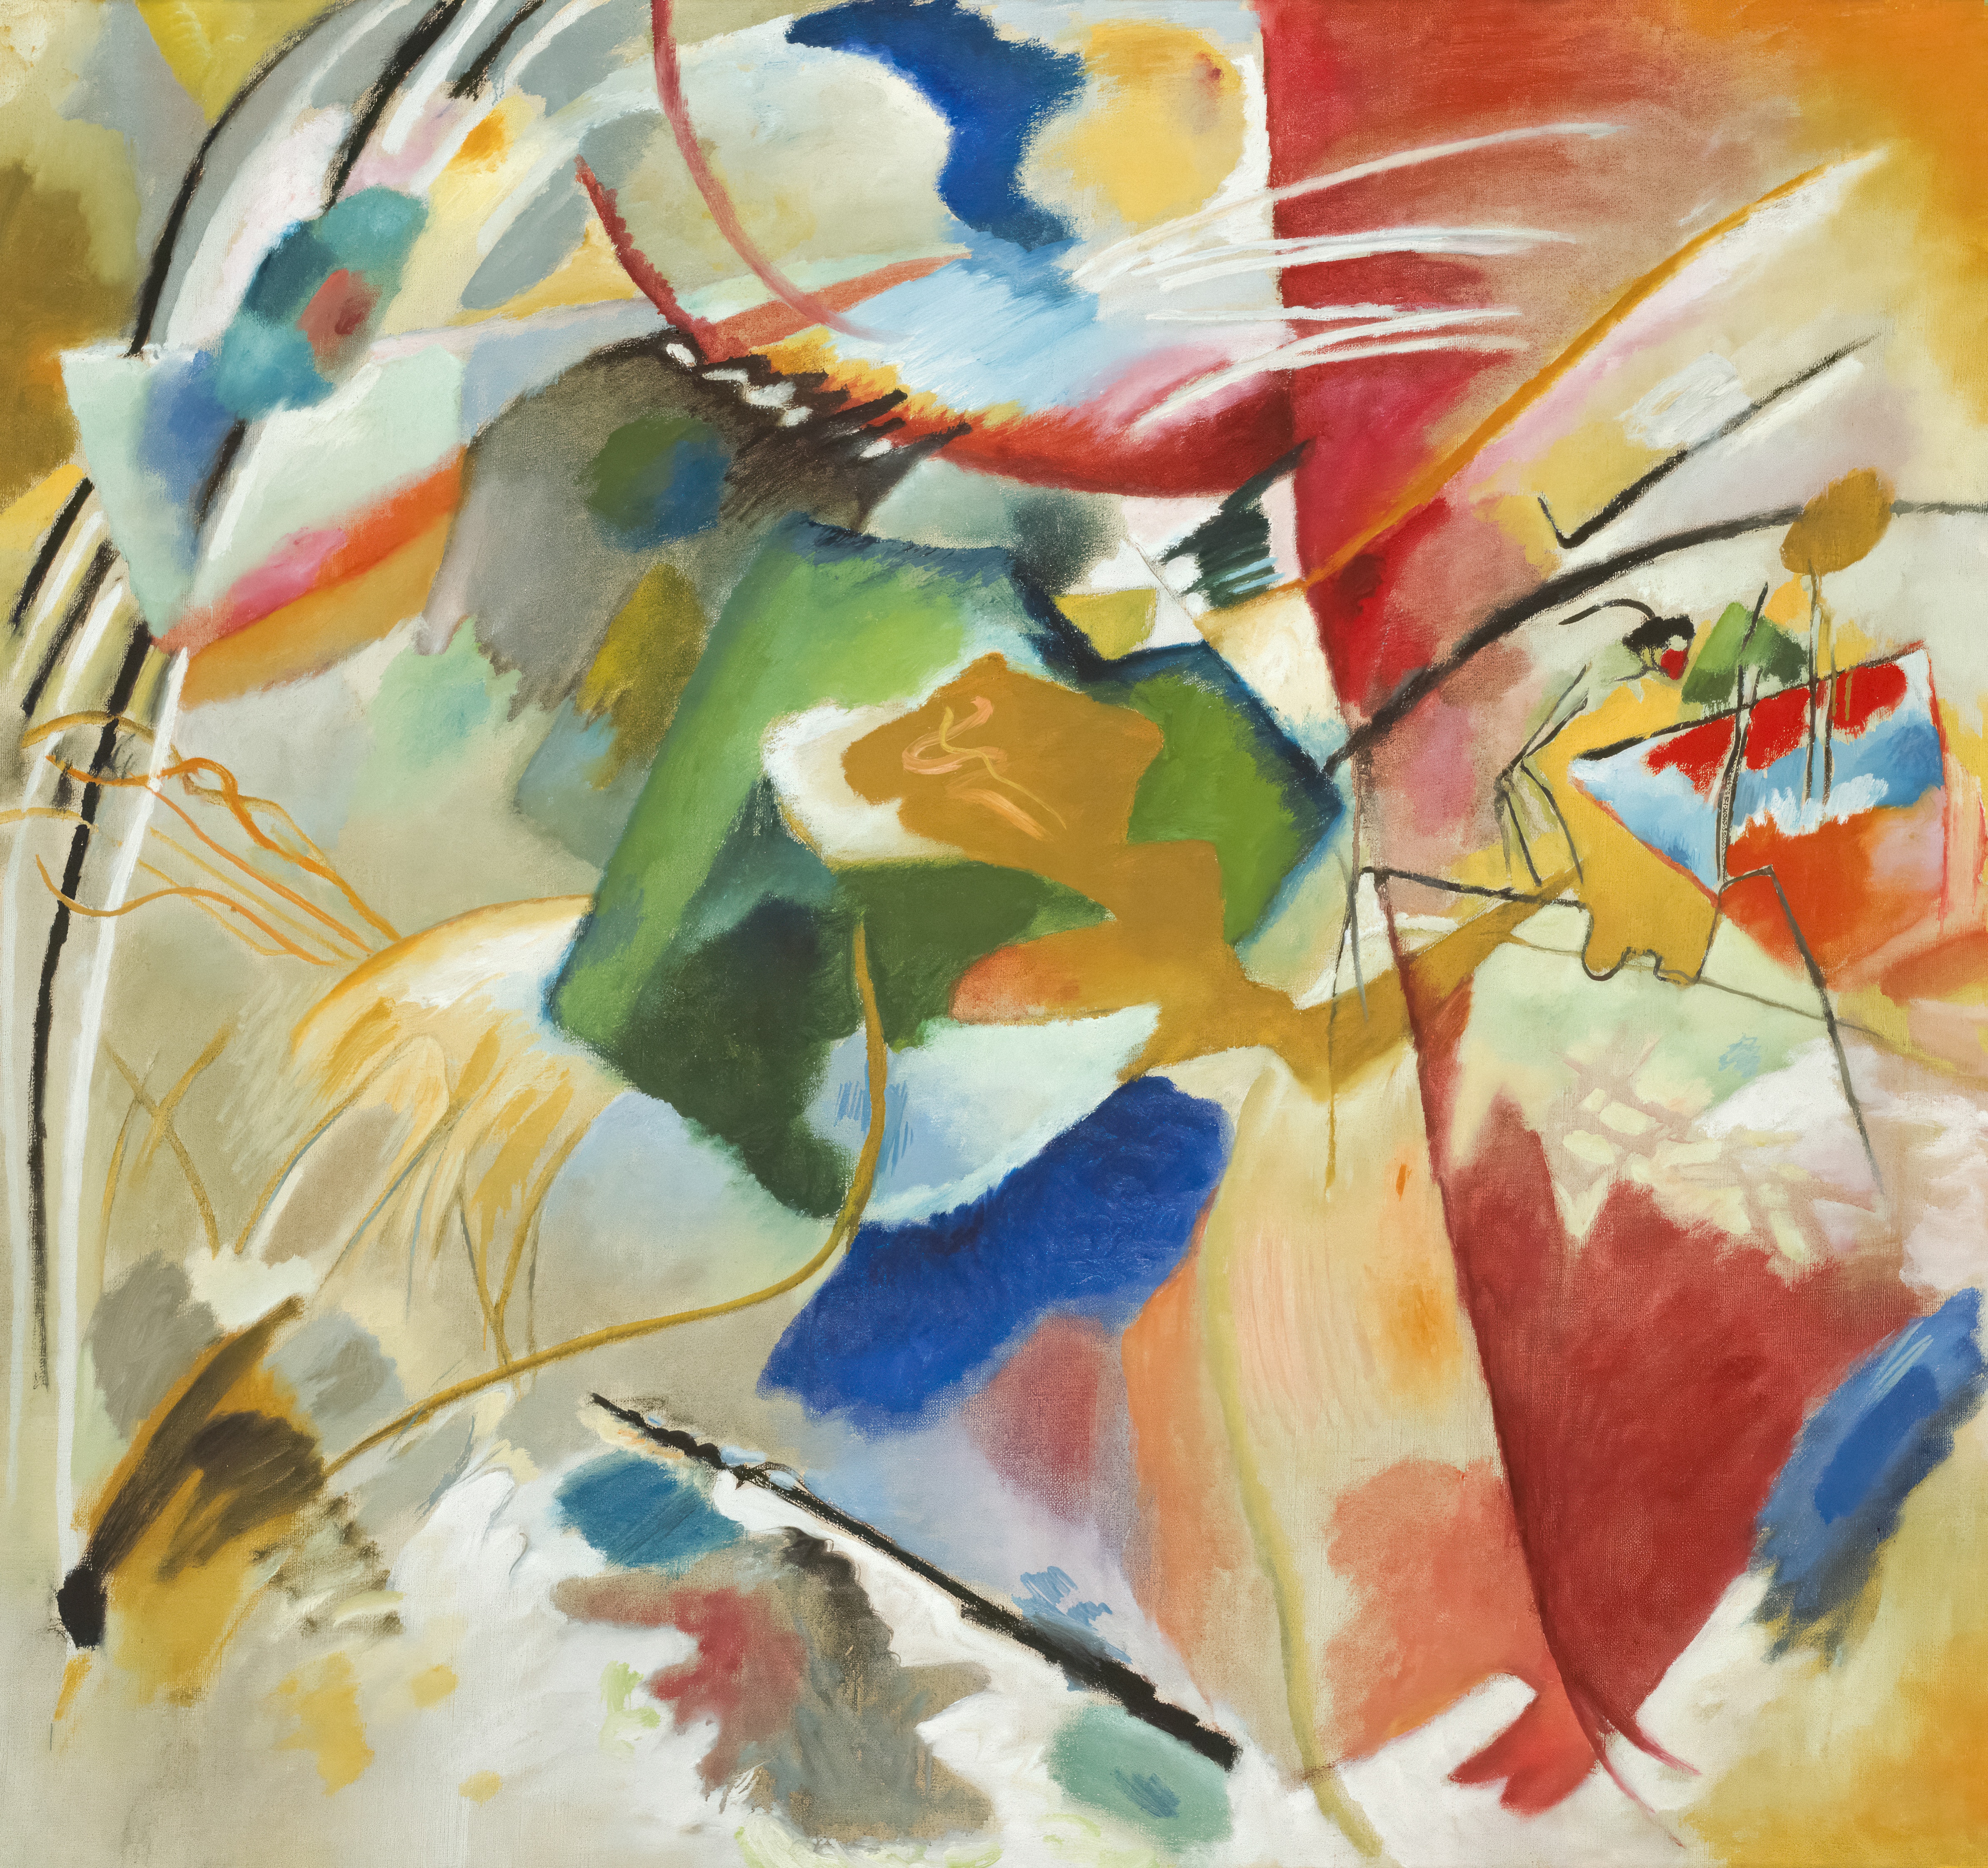 Vasily Kandinsky painting